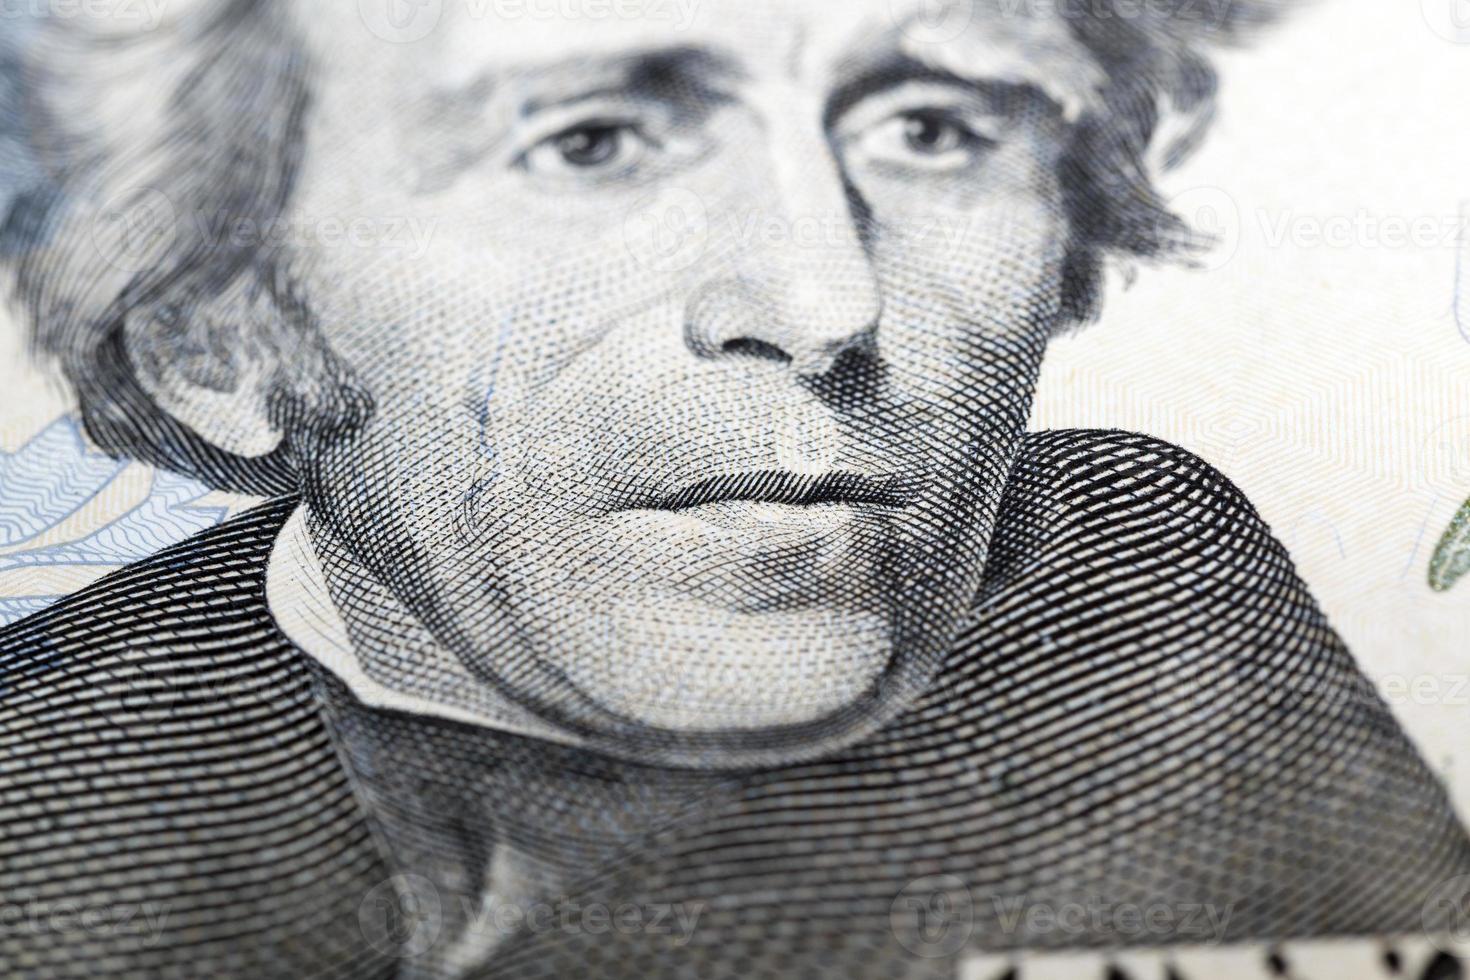 Jackson portrait, close up photo